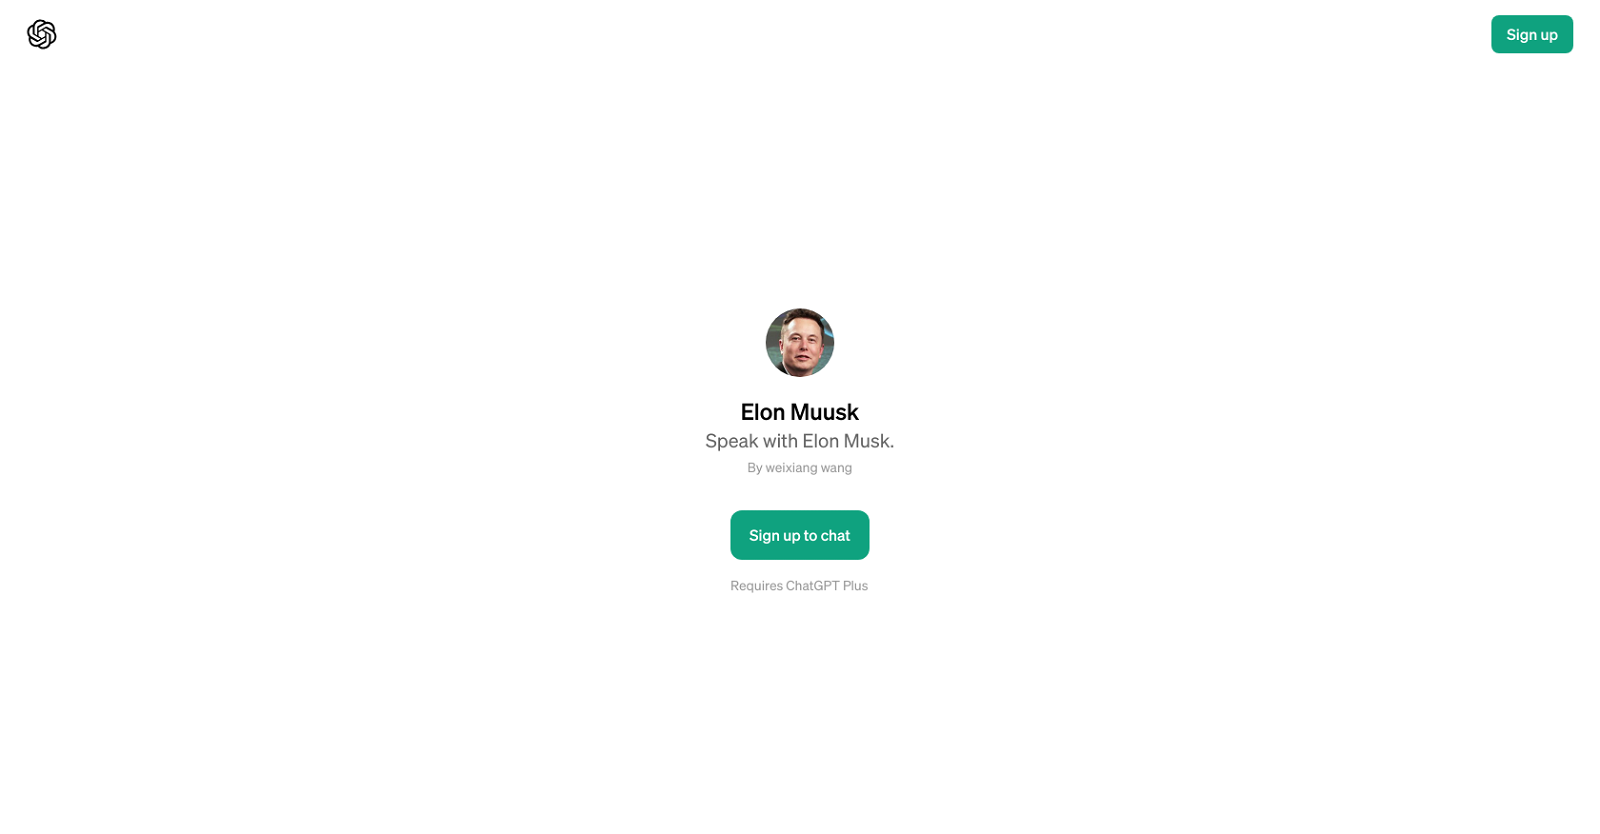 Elon Muusk website